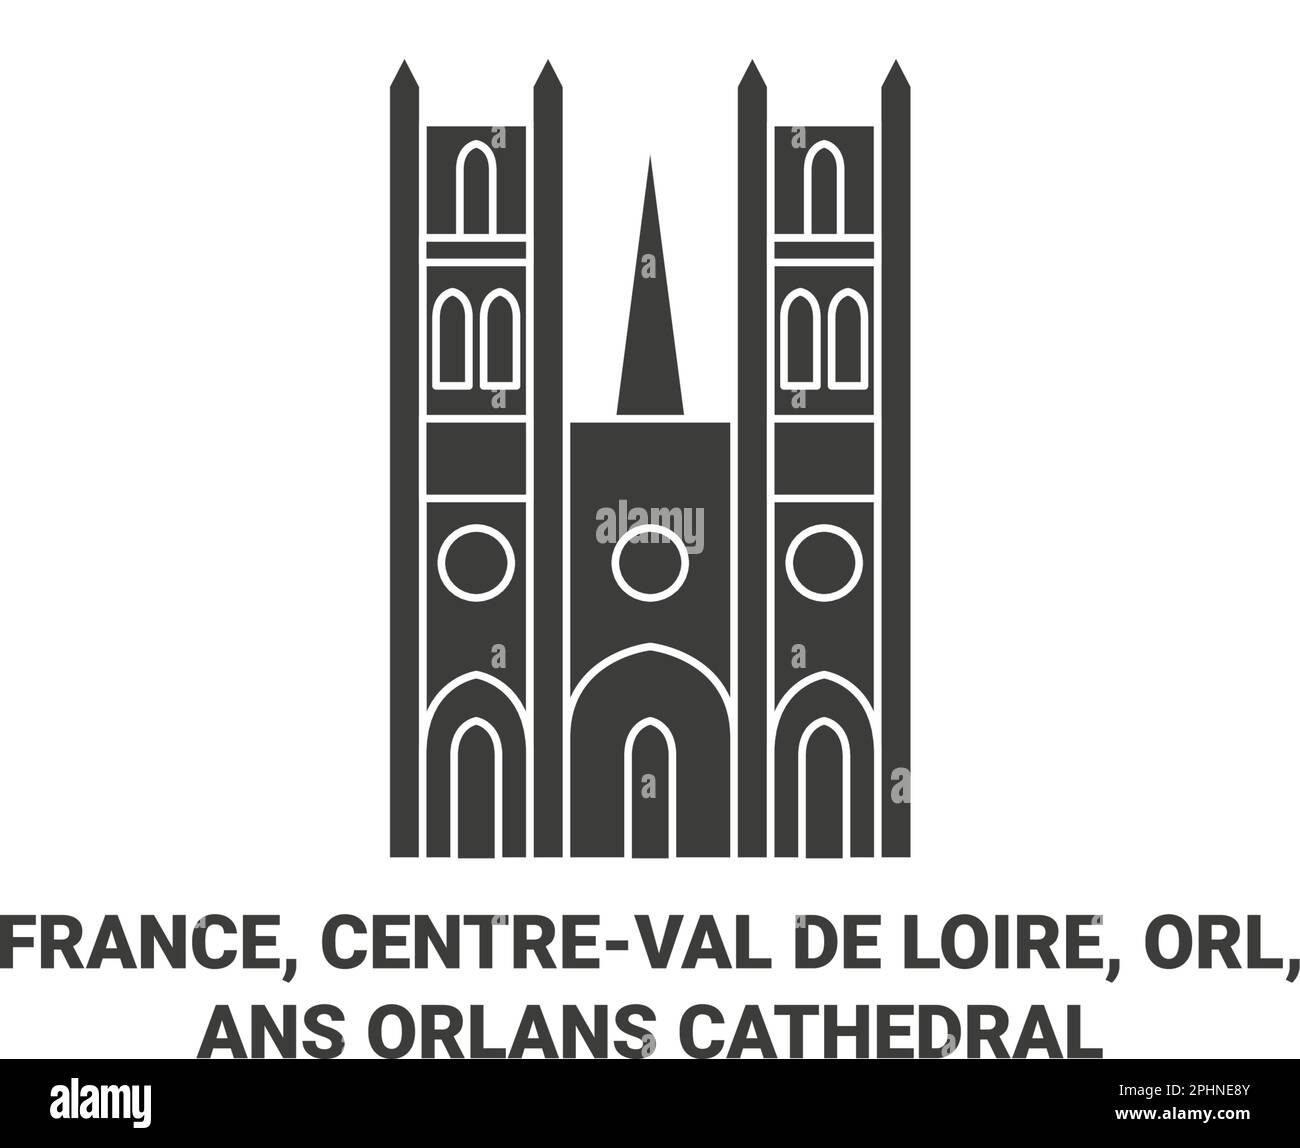 France, Centerval de Loire, ORL, Cathédrale d'Ansorlans illustration vectorielle de voyage Illustration de Vecteur